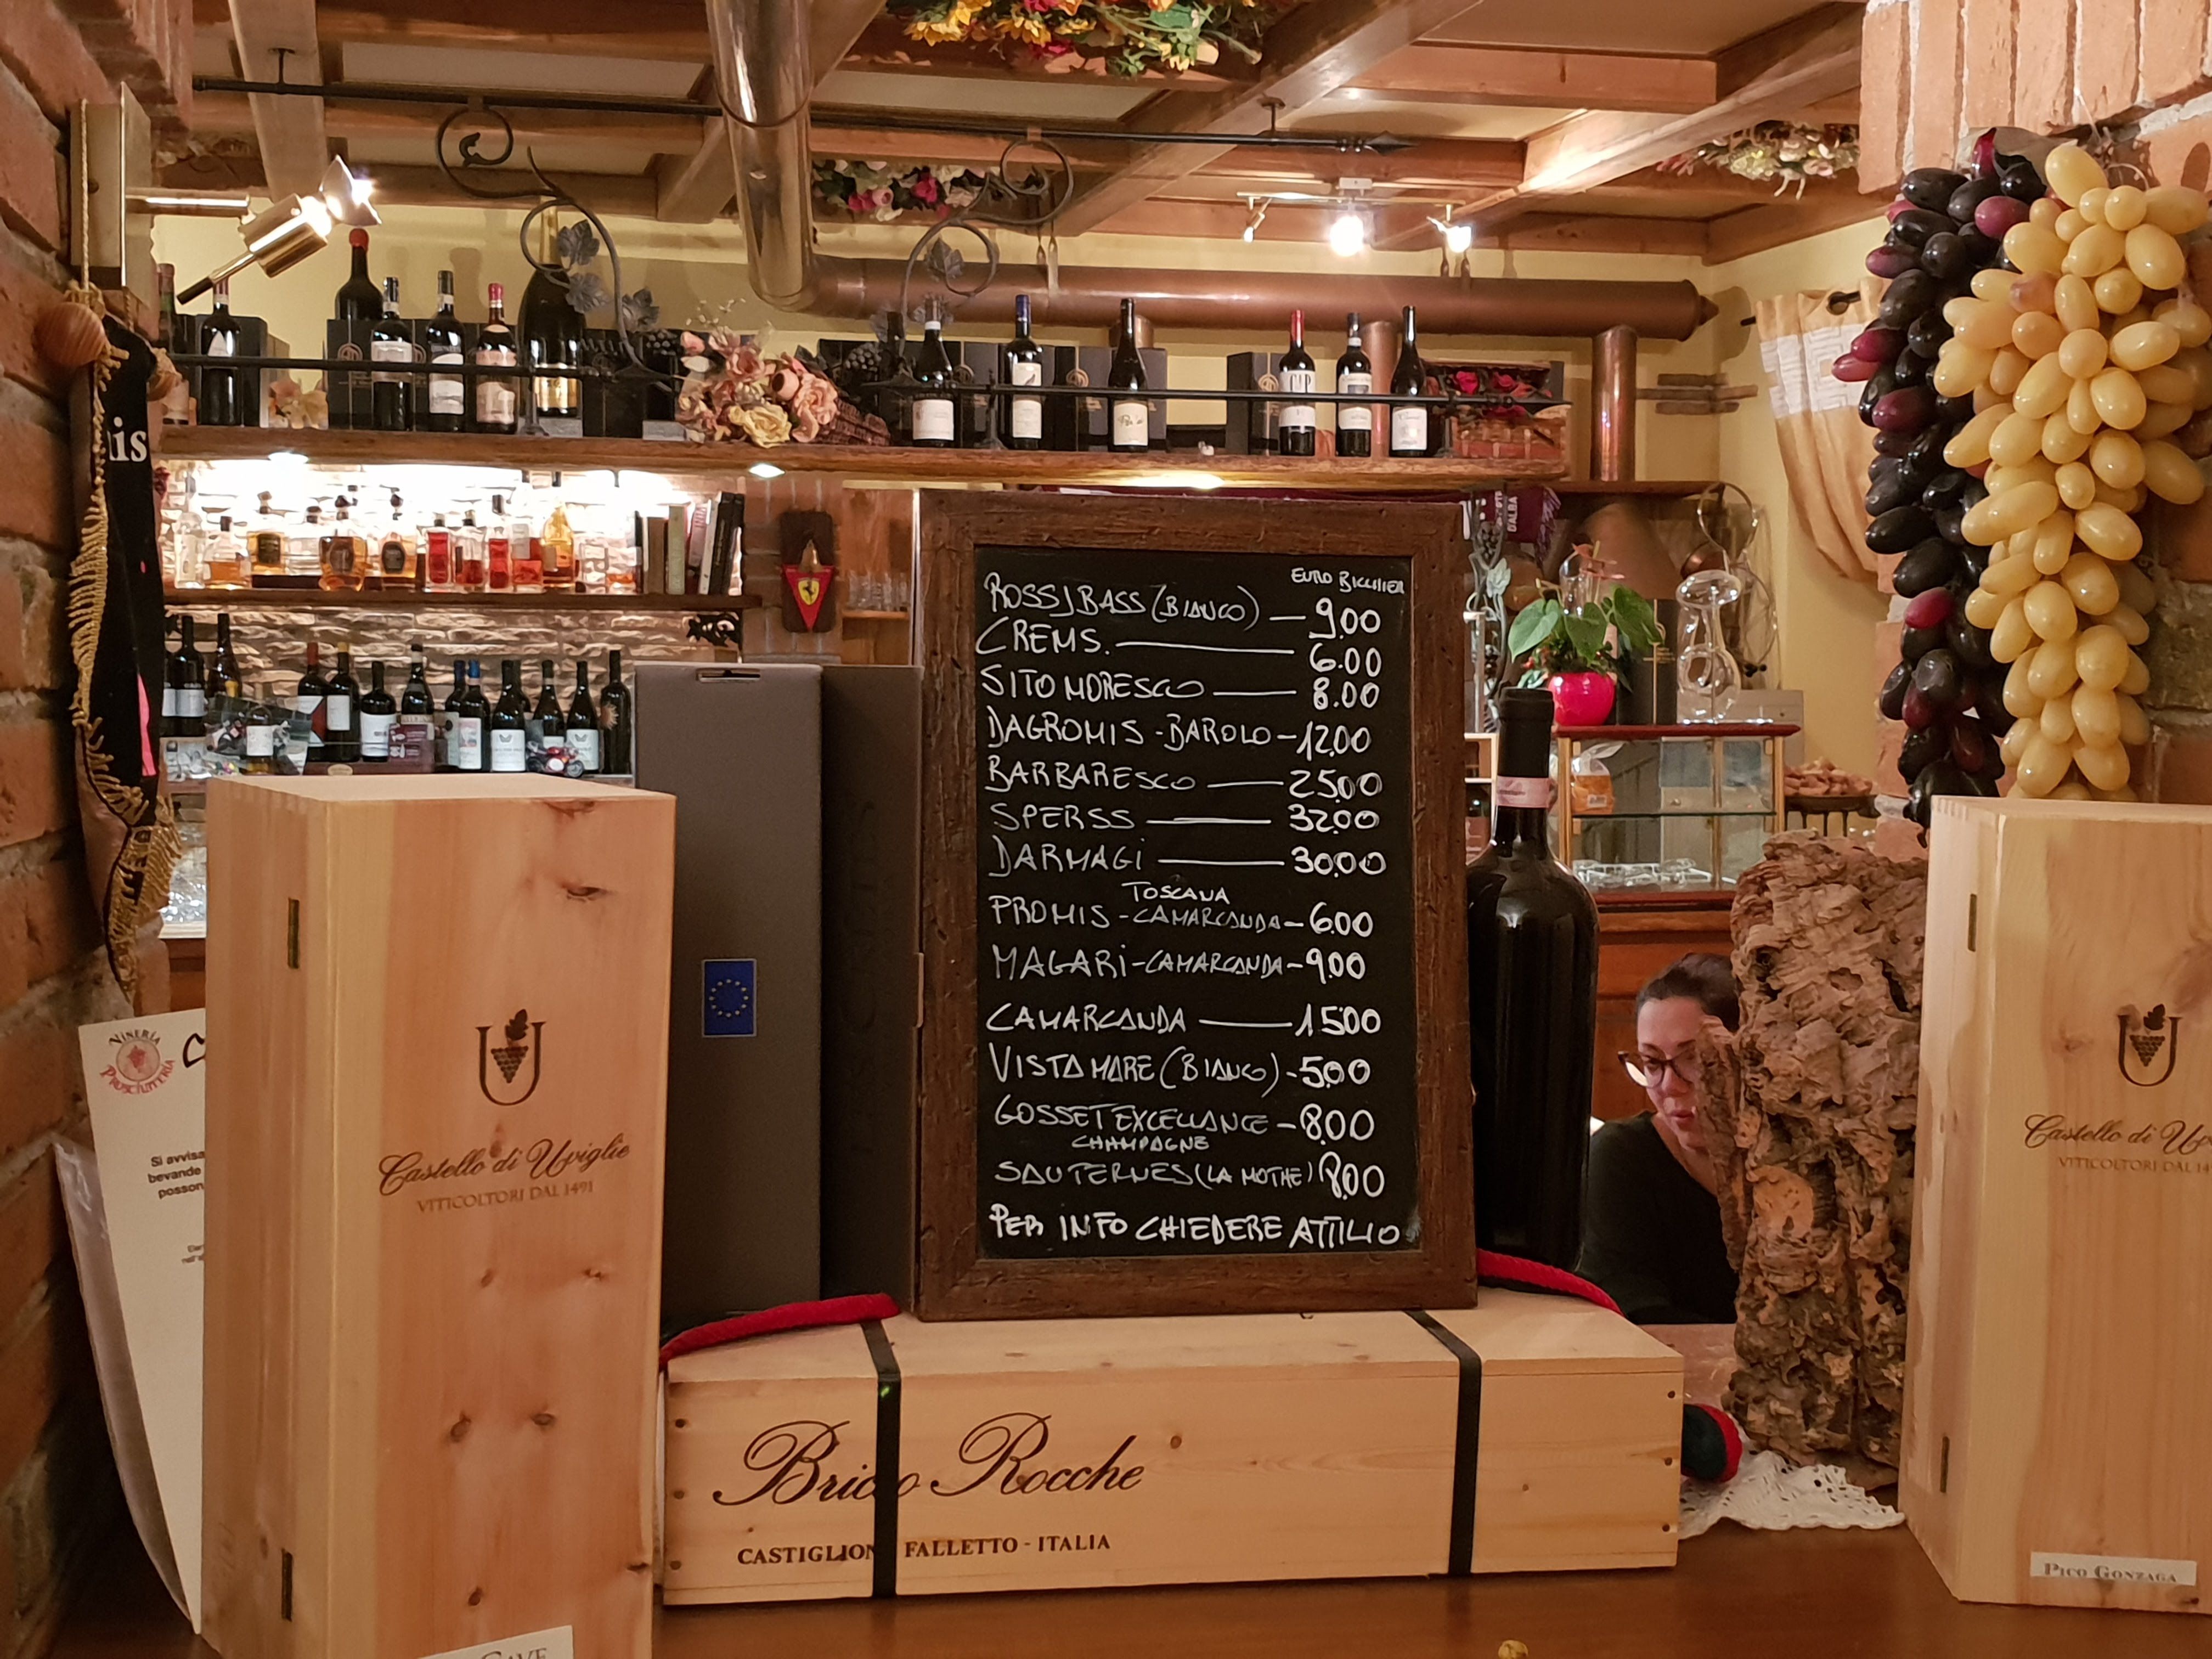 Wine offers at theVineria Caino in Branchette, Ivrea - Local guide @LuigiZ